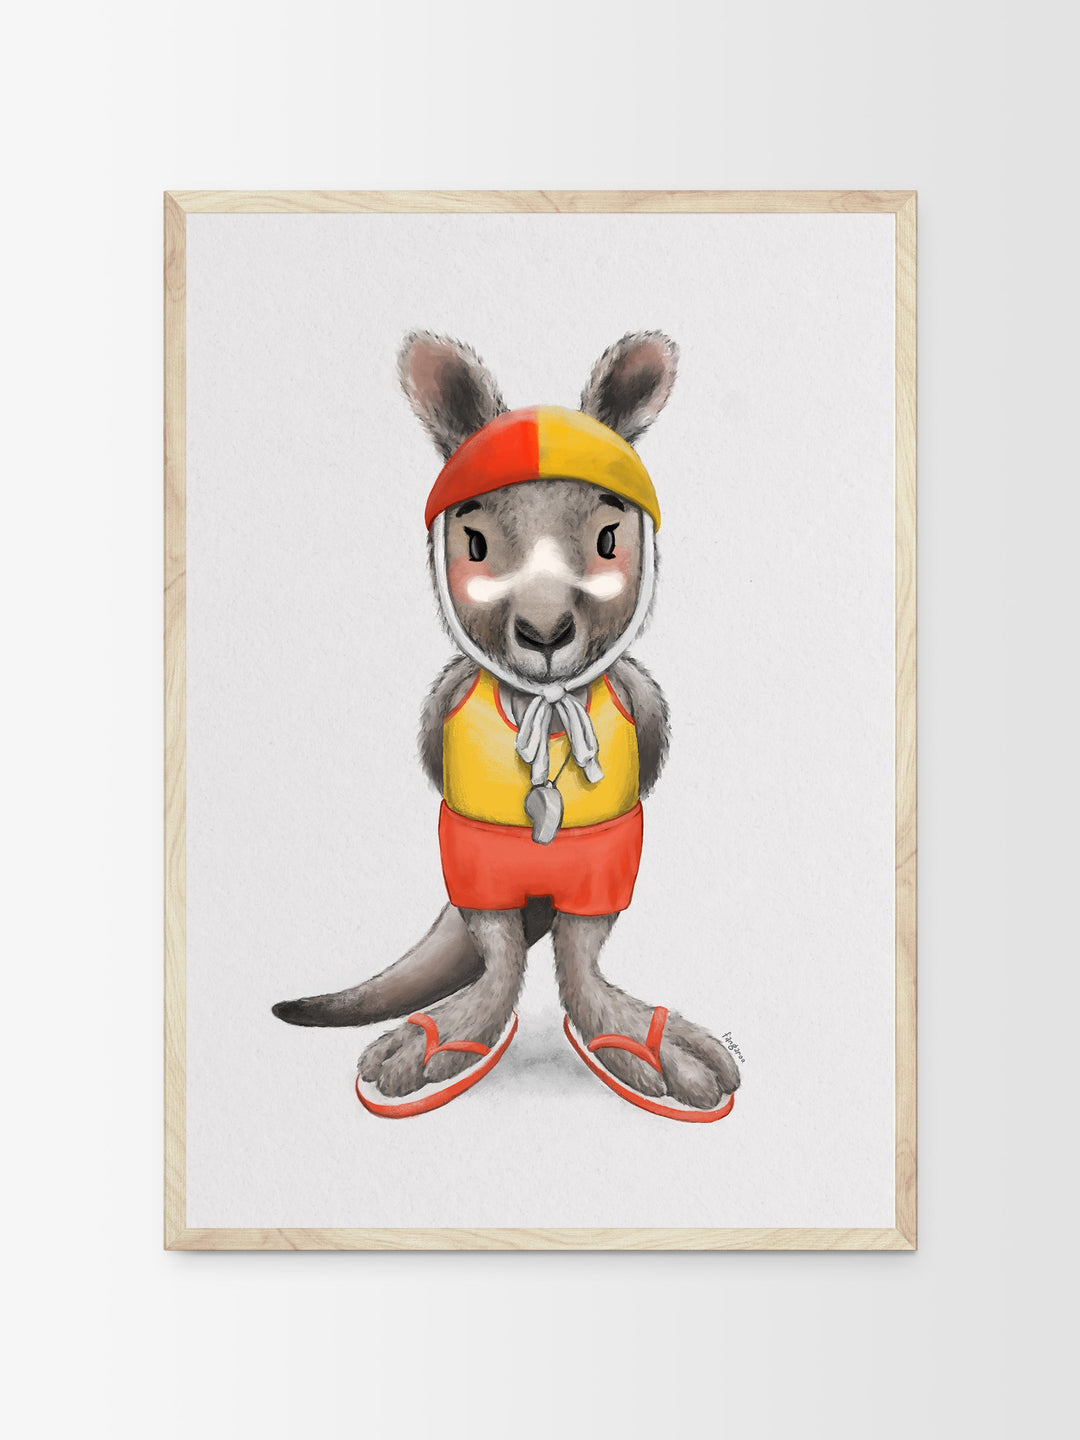 Charlie the kangaroo | Children illustration | Art print kids decor nursery | Australian animals print - Australia Unseen